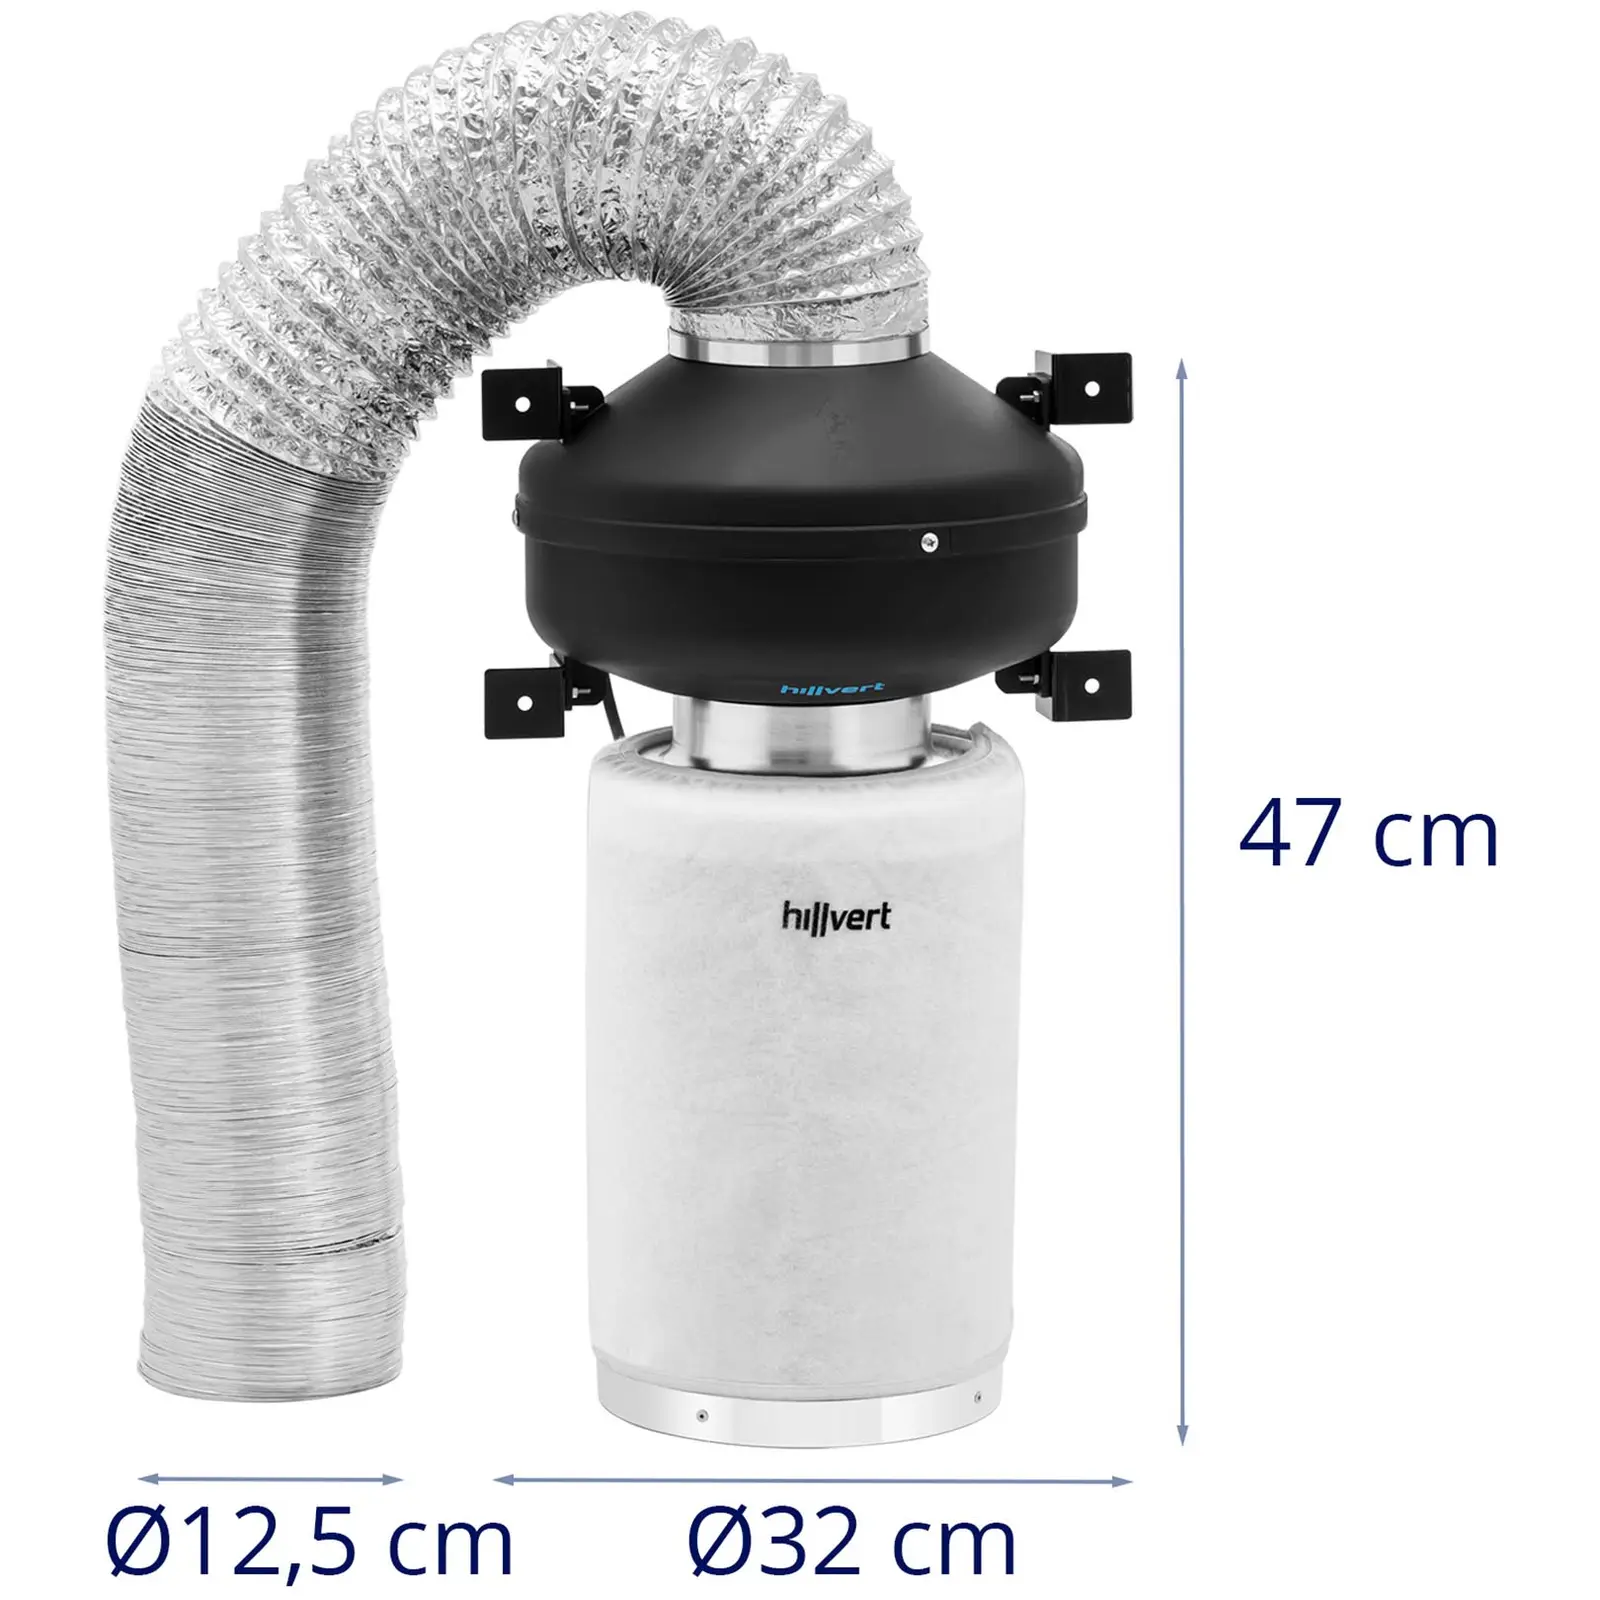 Kit de ventilação - filtro de carvão ativado / ventilador de extração / tubo de ventilação - saída Ø130 mm